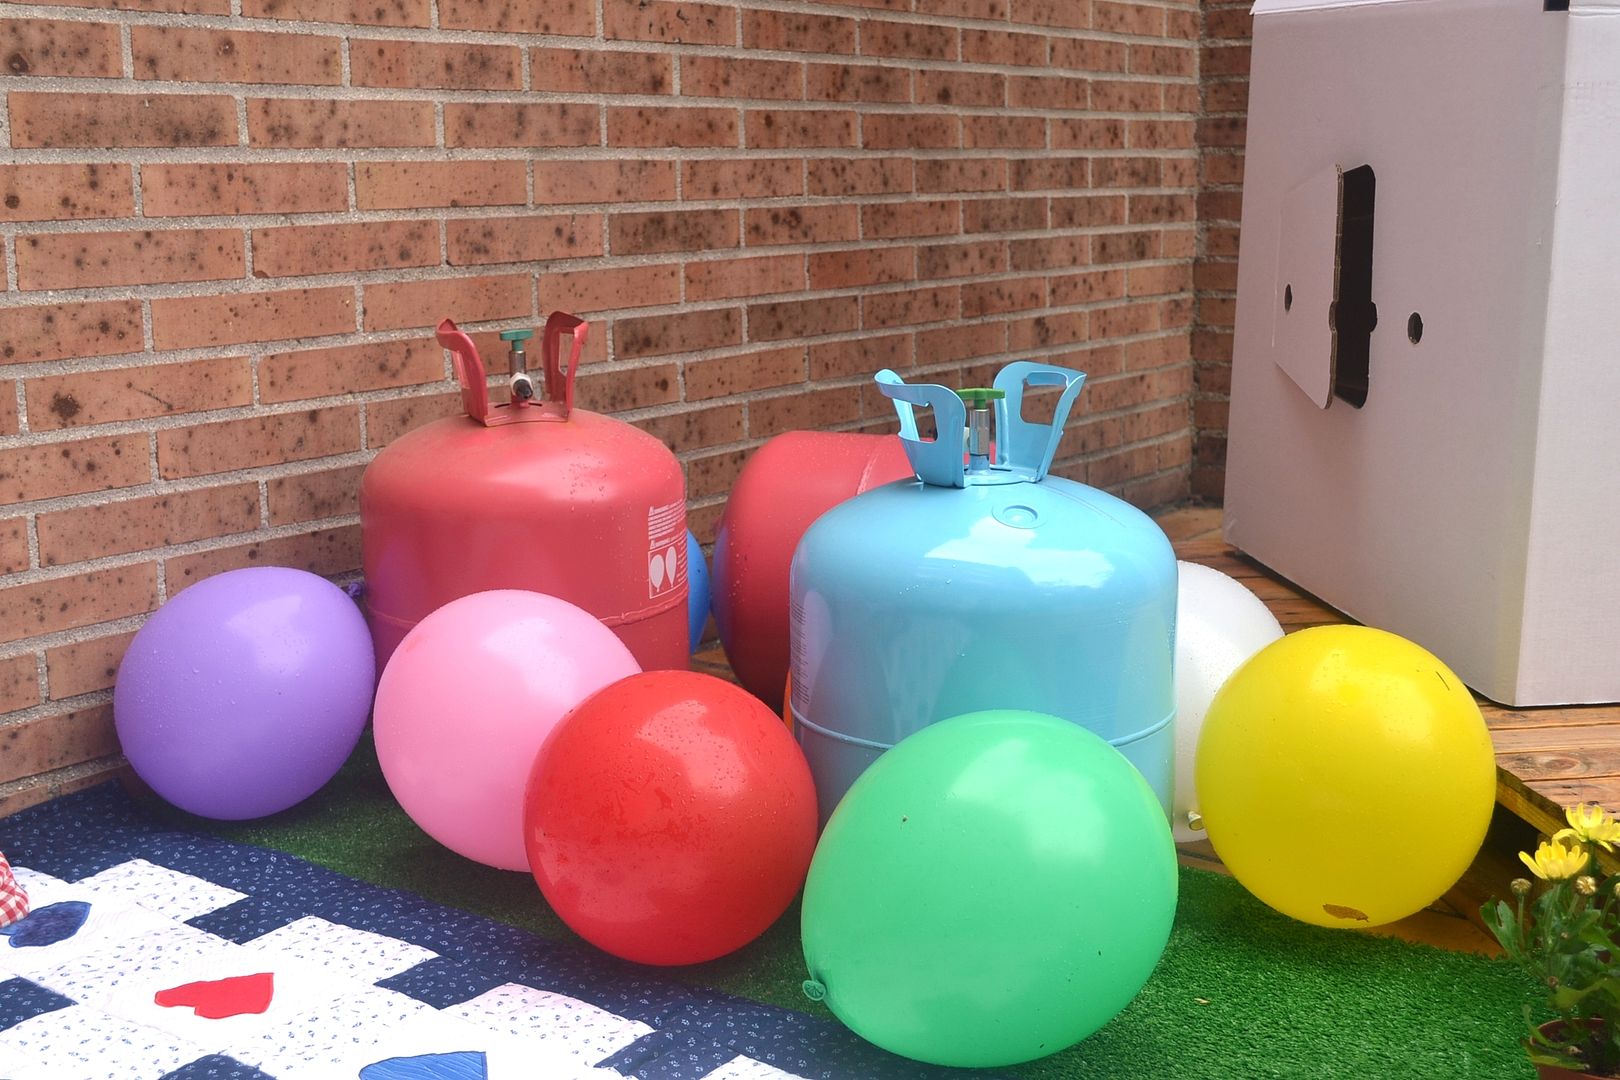  bombonas de helio tras hinchar globos película up una aventura de altura